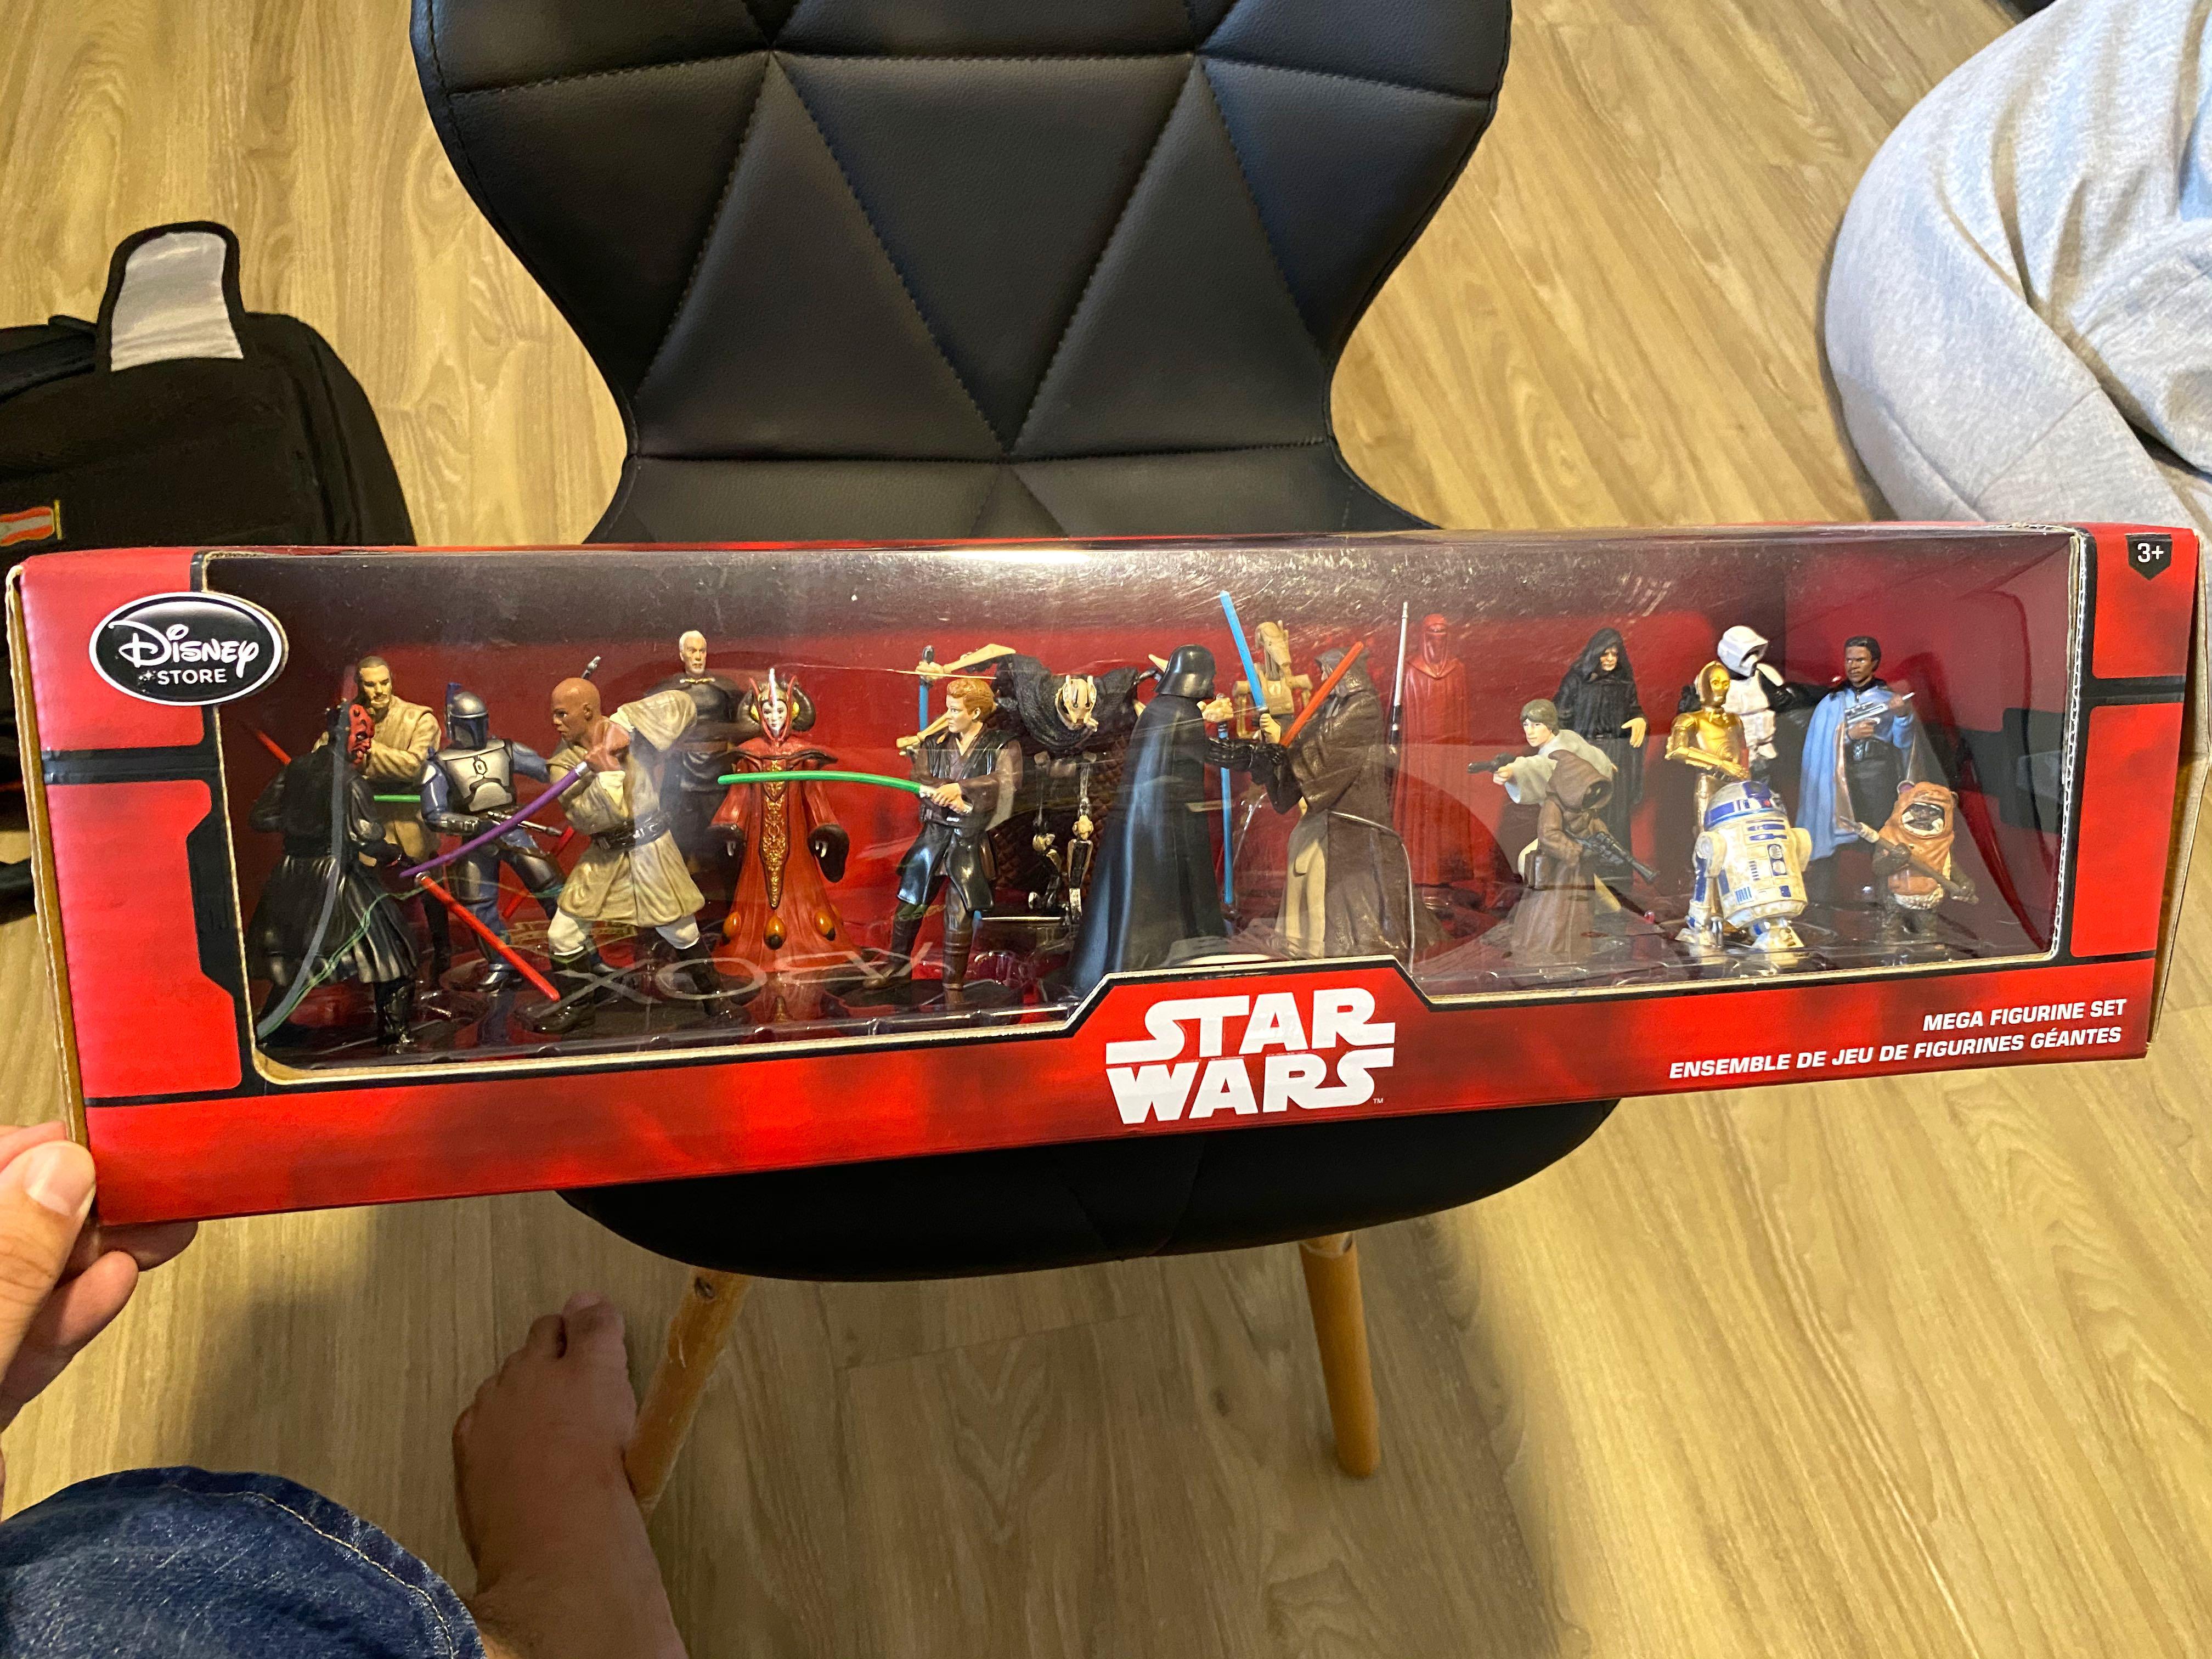 Star Wars Mega Figure Play Set